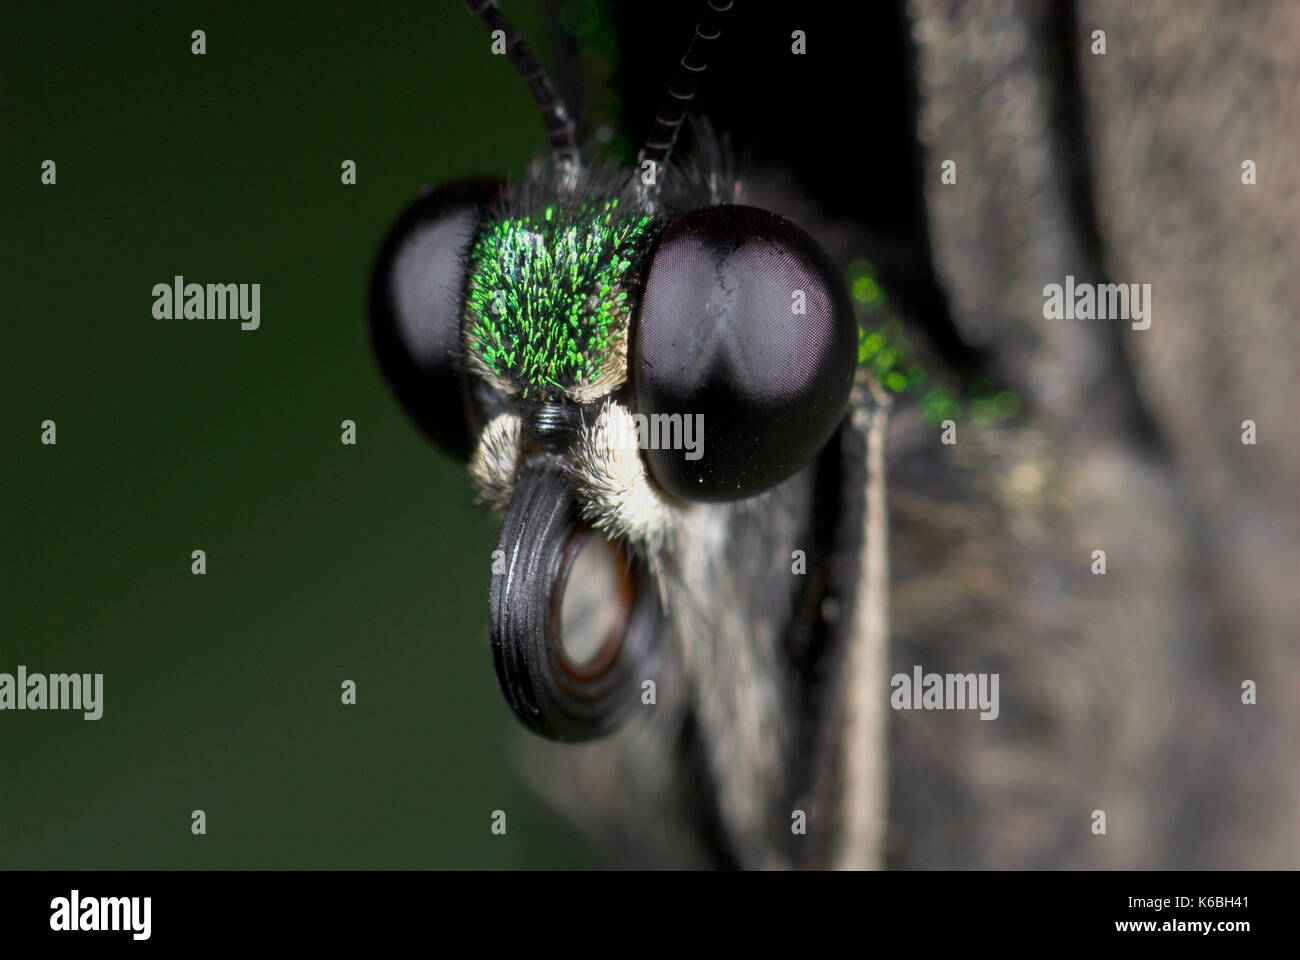 Emerald Schwalbenschwanz Schmetterling Auge, Papilio Palinurus-arten, Nahaufnahme Compound eye, schwarz, Philippinen Stockfoto